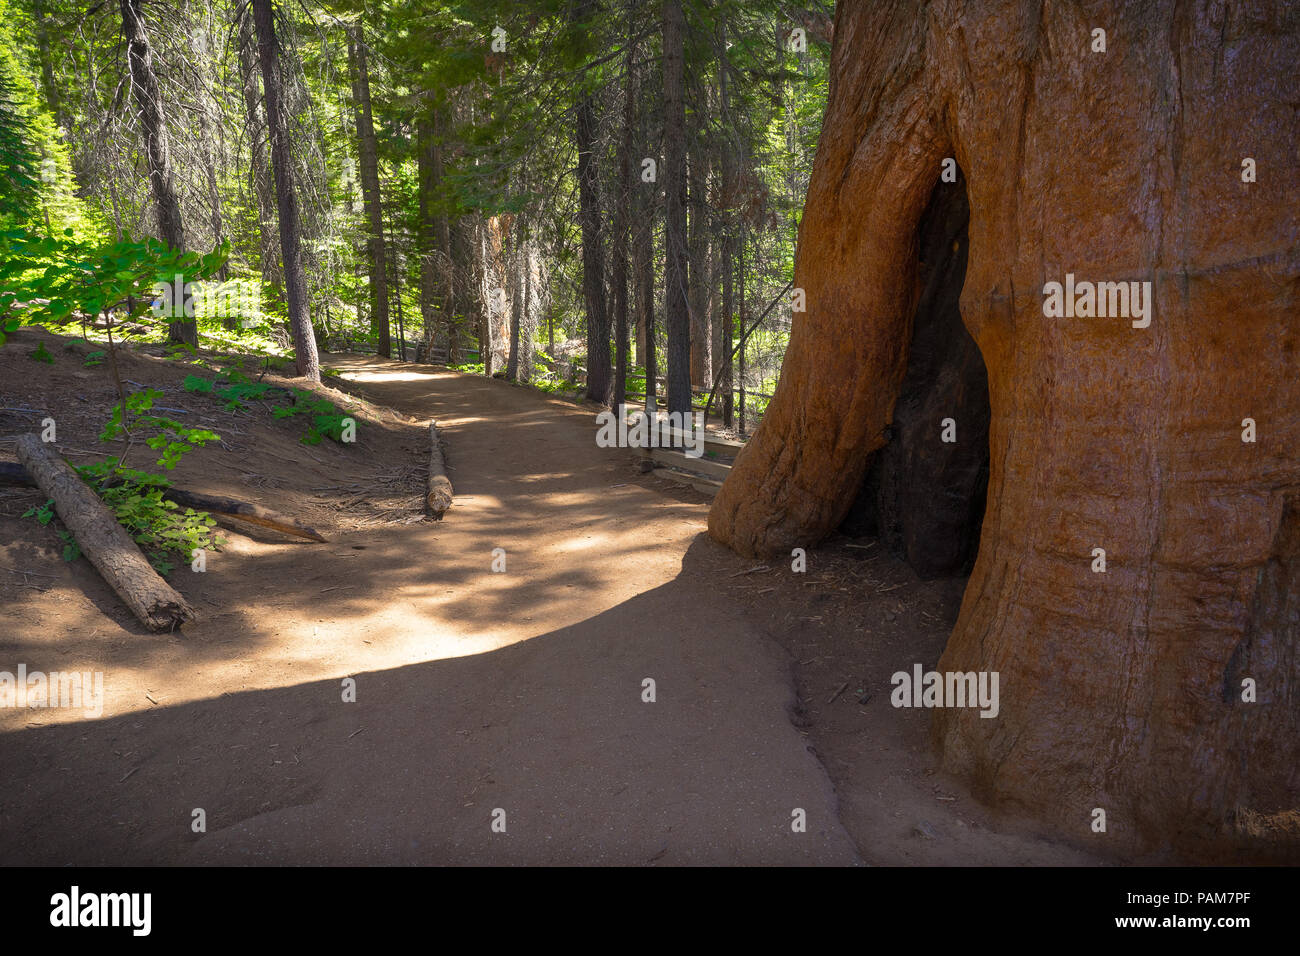 Coupée dans un tronc d'arbre Séquoia géant en raison de dommages causés par l'incendie - Tuolumne Grove, Yosemite National Park Banque D'Images